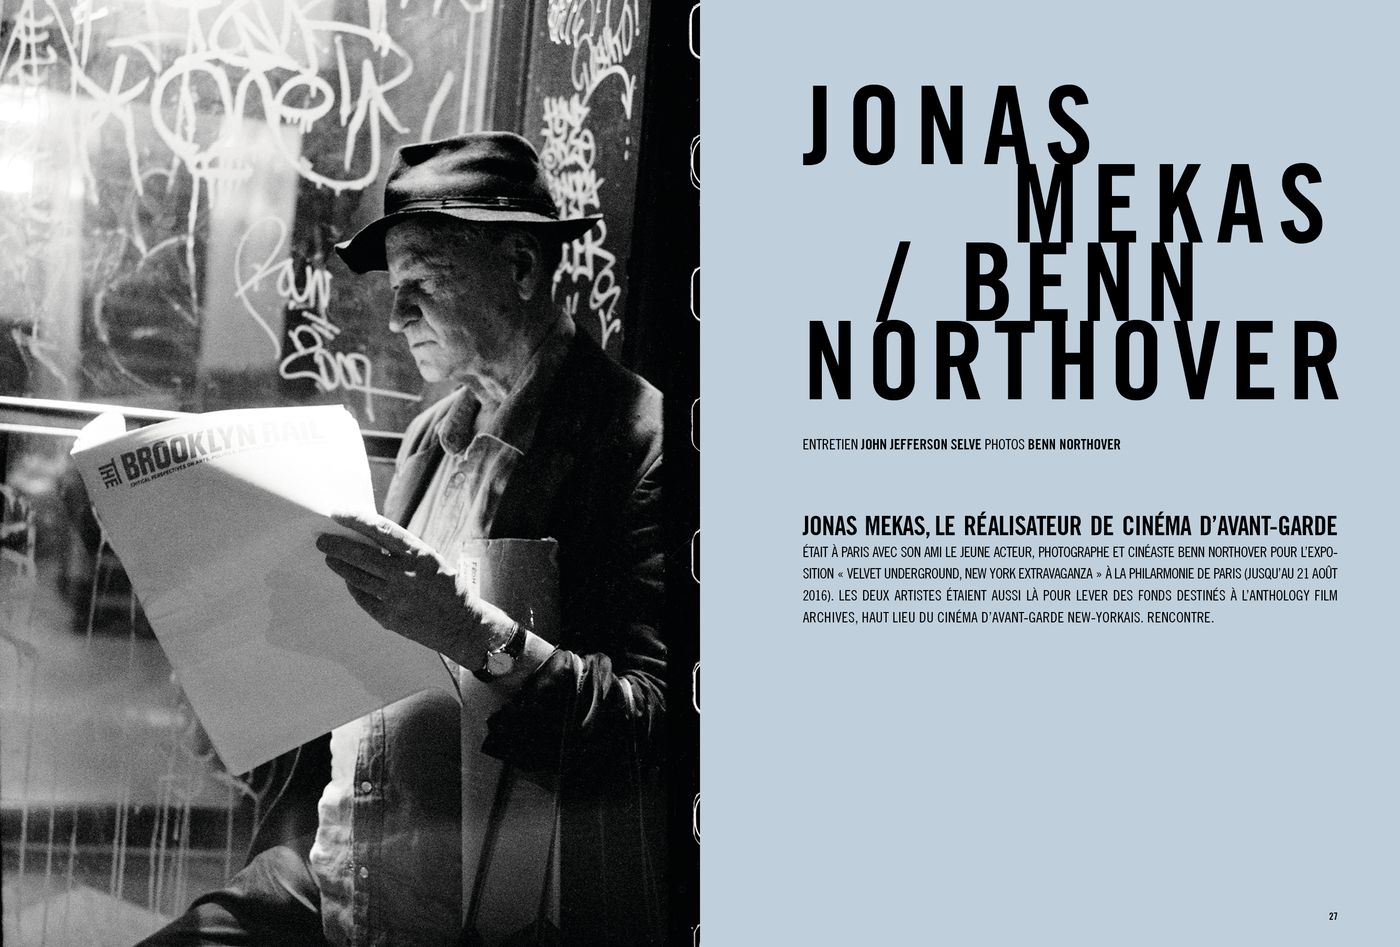 Possession Immédiate Volume 5 - Entretien de John Jefferson Selve avec Jonas Mekas et Benn Northover